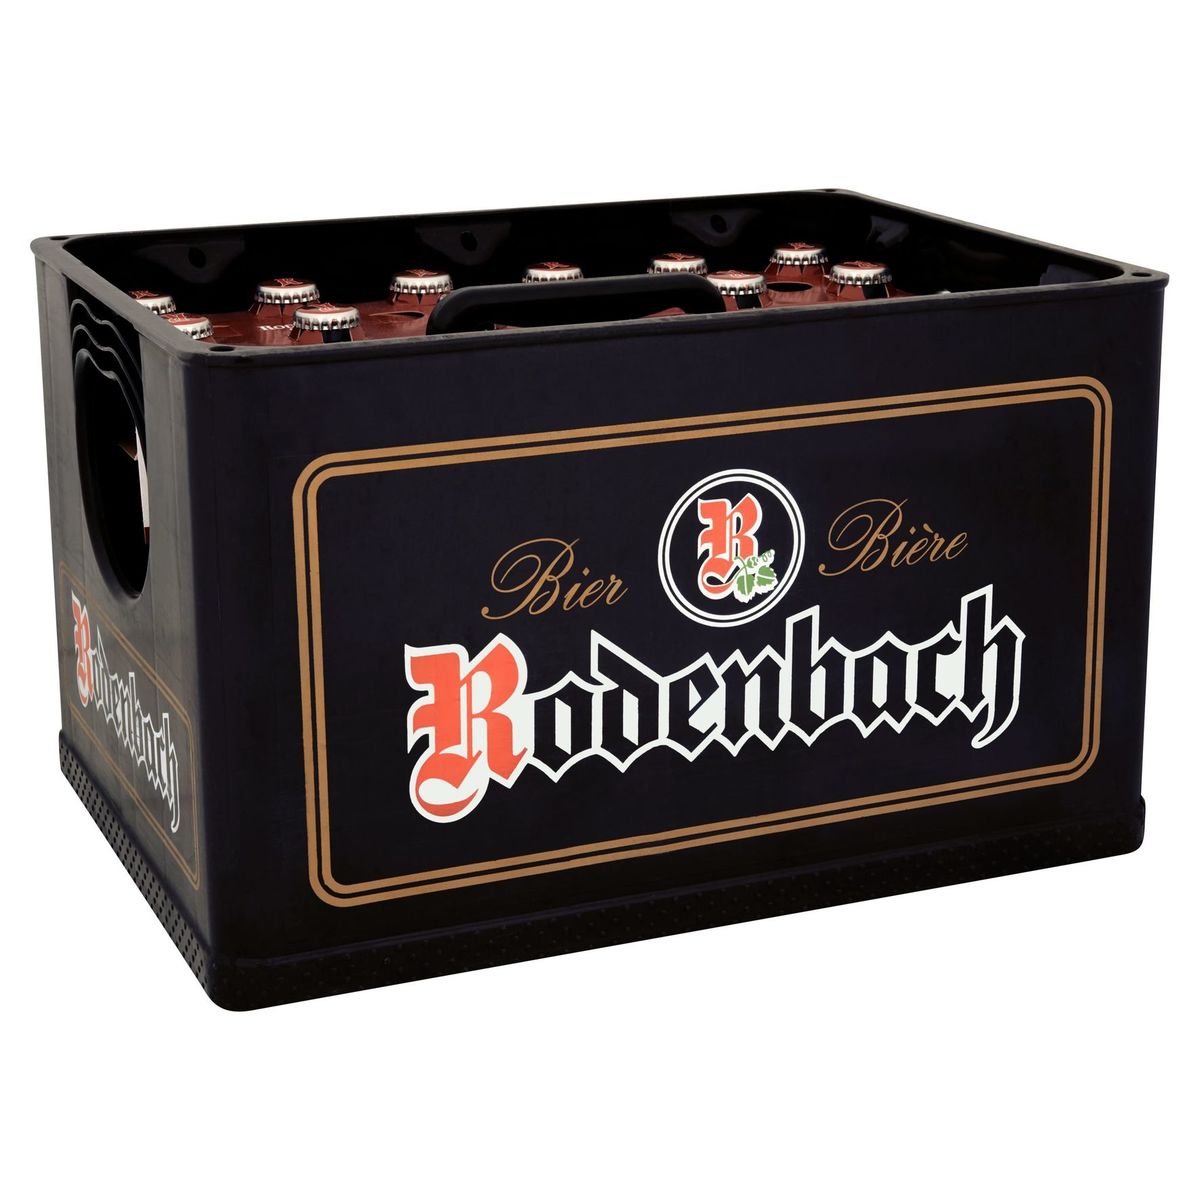 Rodenbach Classic Bier Krat 4 x (6 x 25 cl)